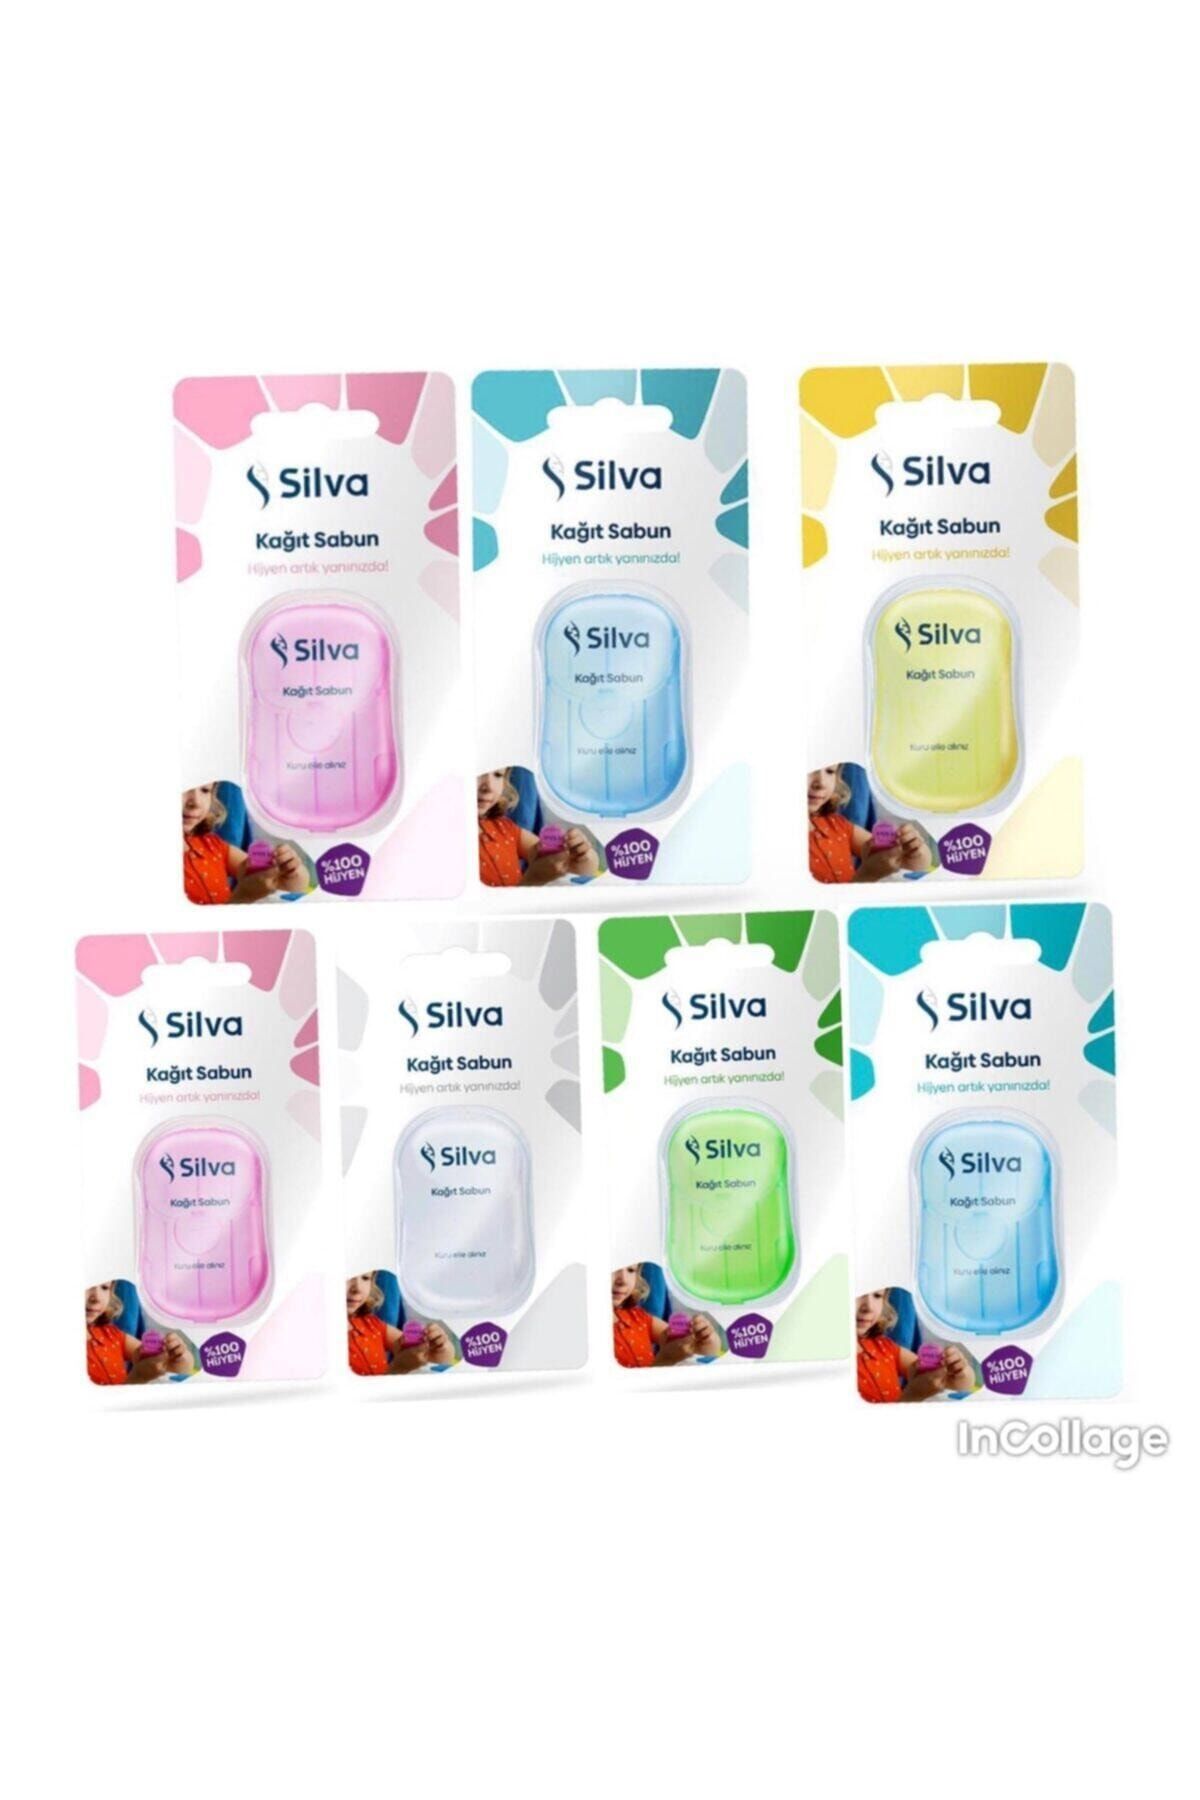 Silva 7 Paket Kağıt Sabun Her Pakette 20 Yıkamalık Kağıtsabun Vardır Aysun Dursun